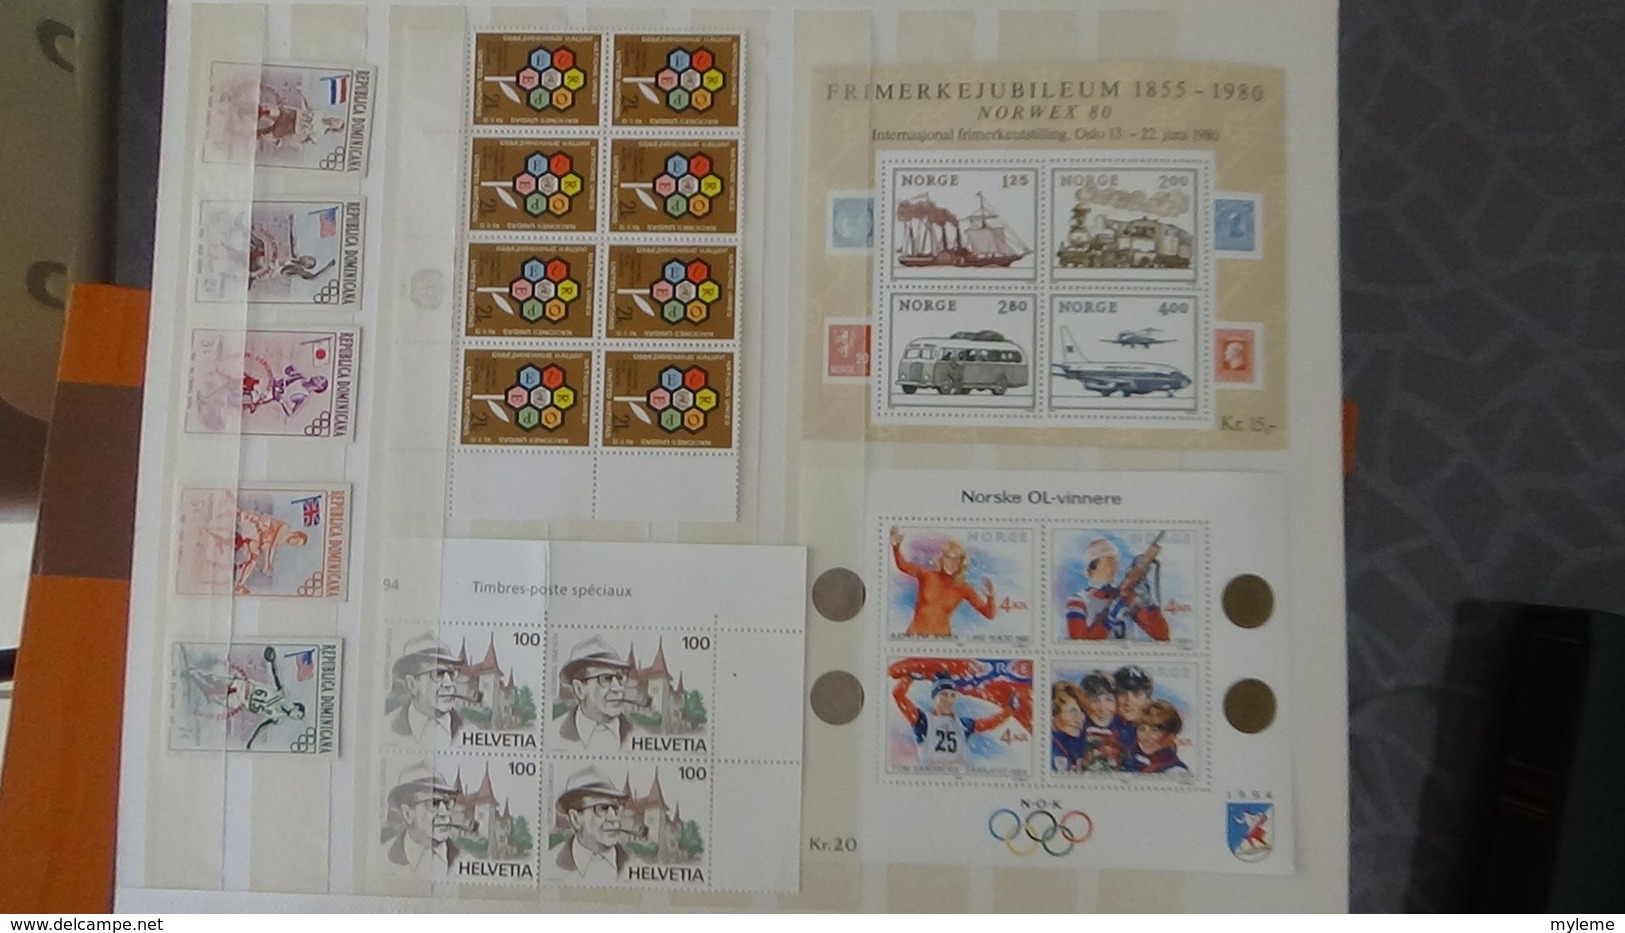 Collection de timbres, blocs (dont 29 carnets ** + 9 pubs ** de Belgique ) ** de divers pays du monde ... Très sympa !!!